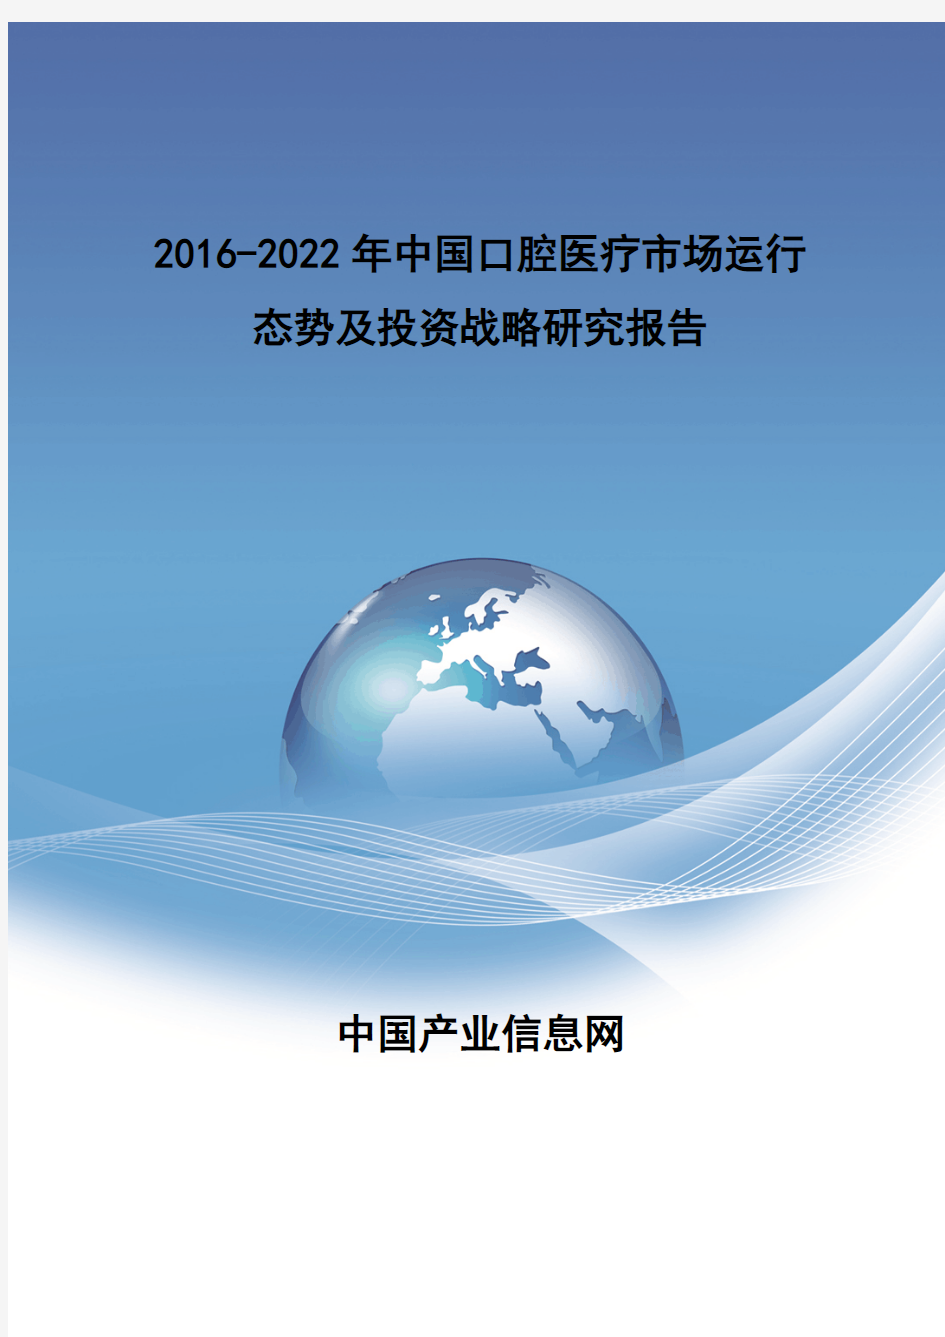 2016-2022年中国口腔医疗市场报告